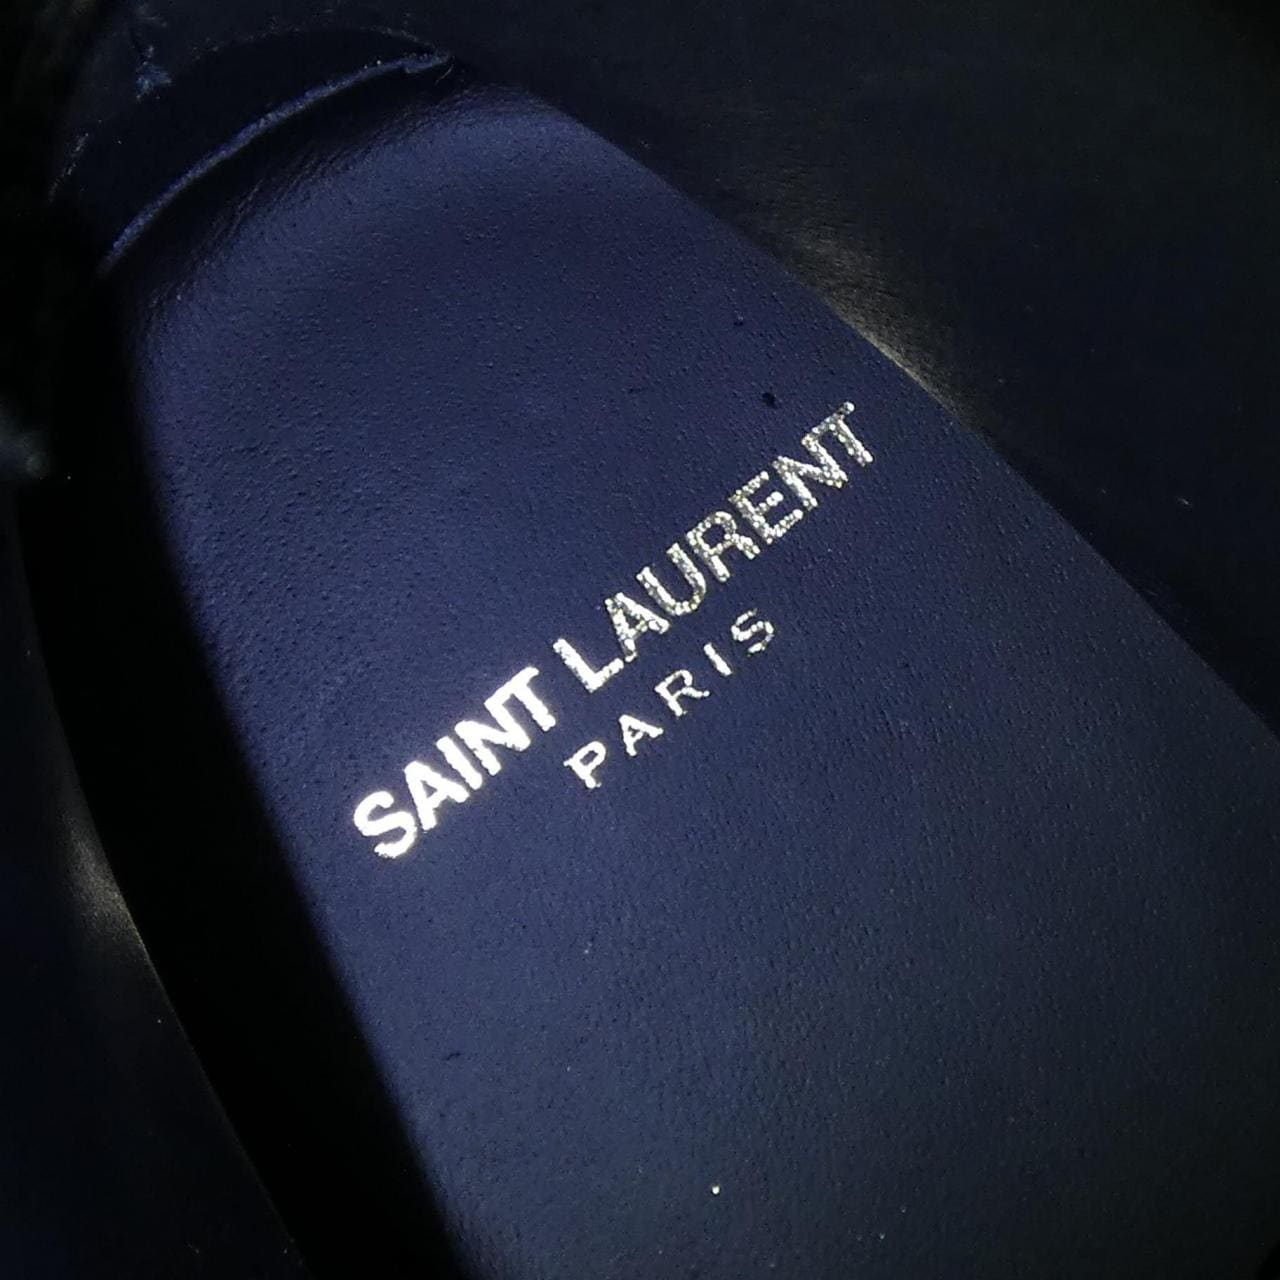 サンローラン SAINT LAURENT ブーツ